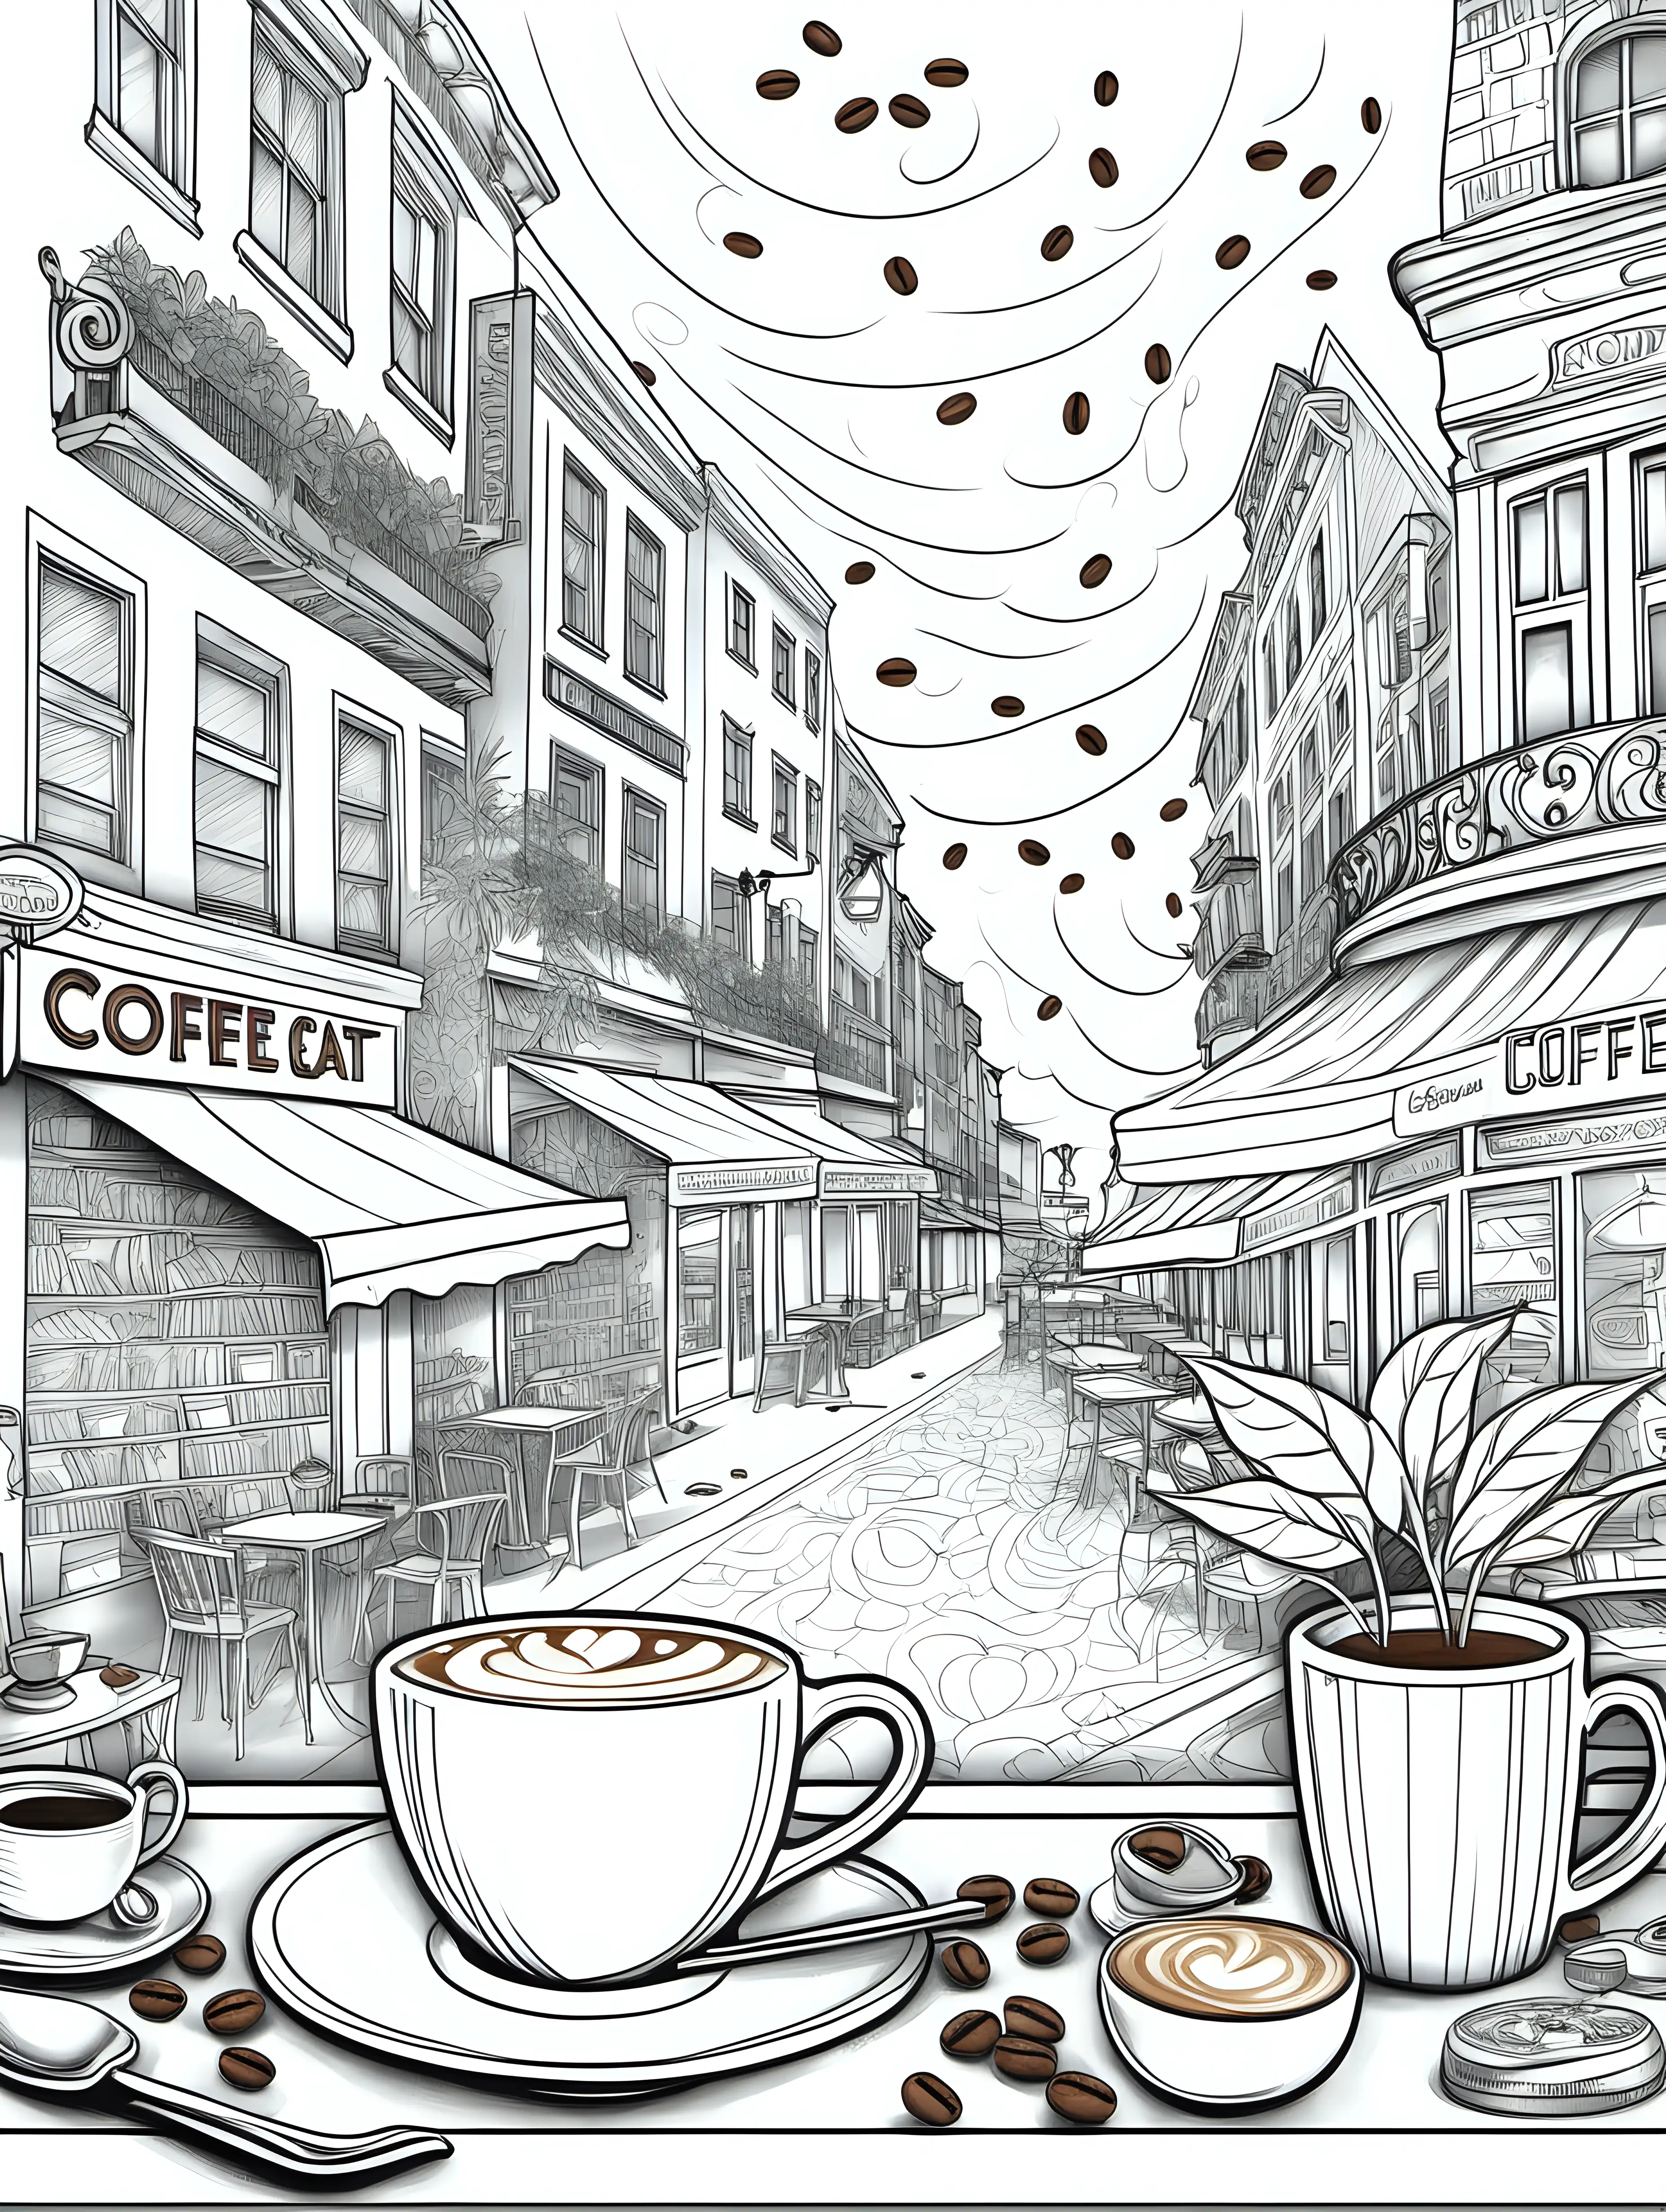 Entwickle eine Sammlung von Illustrationen für ein Erwachsenen-Malbuch mit dem Titel 'Kaffeeklatsch und Farbenzauber'. Die Bilder sollten die gemütliche und kreative Atmosphäre eines Cafés einfangen und dabei verschiedene Aspekte der Kaffeekultur hervorheben. Konzentriere dich auf Motive wie kunstvoll verzierte Cappuccino-Schaumkronen, detailreiche Darstellungen von Kaffeebohnen und -pflanzen, Szenen aus charmanten Straßencafés, Vintage-Kaffeemühlen und -maschinen sowie Menschen, die in entspannter Runde ihren Kaffee genießen.

Die Illustrationen sollten sowohl für Anfänger als auch für fortgeschrittene Ausmaler geeignet sein und genügend Raum für Farbexperimente bieten. Achte darauf, dass jedes Bild genug Detailtiefe besitzt, um die Betrachter zu fesseln und ihnen ein angenehmes Malerlebnis zu ermöglichen. Ziel ist es, eine Kollektion zu schaffen, die nicht nur die Liebe zum Kaffee widerspiegelt, sondern auch eine Oase der Entspannung und des kreativen Ausdrucks bietet.
